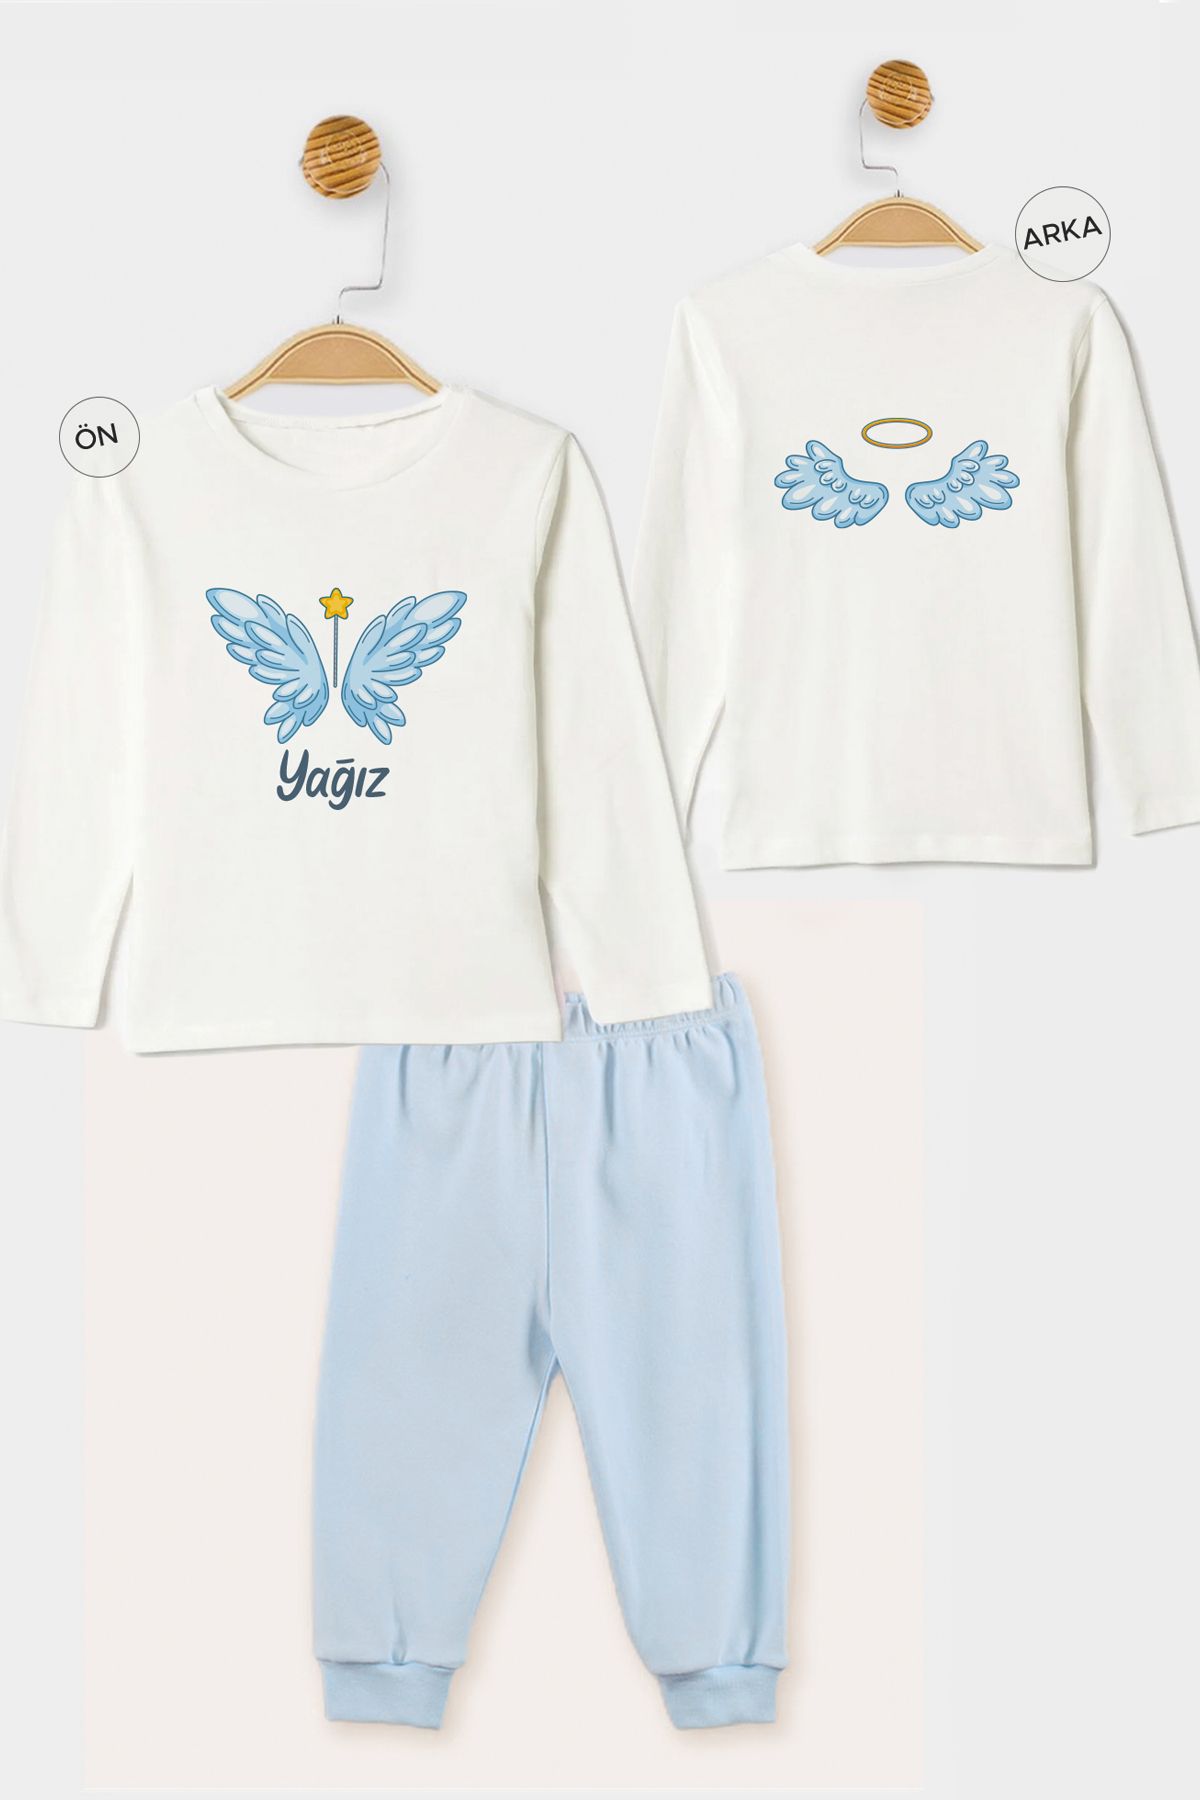 Homamia İsme Özel Organik Erkek Bebek Pijama Takımı